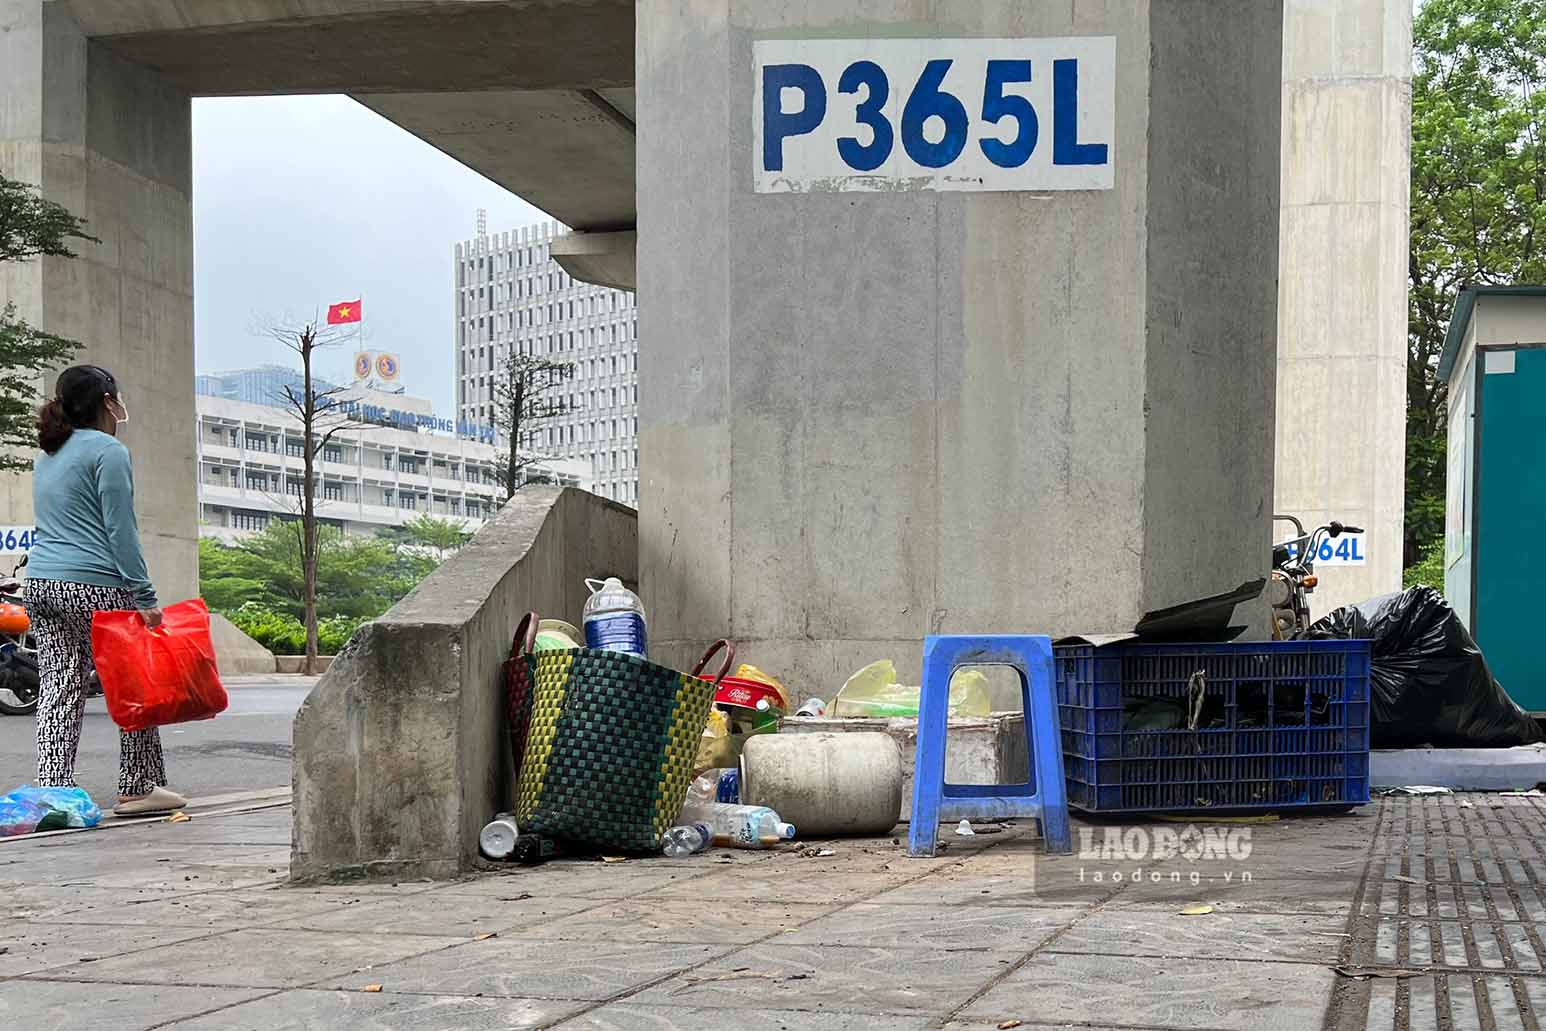 Không chỉ xe rác tập kết tại khu vực xung quanh nhà ga, tình trạng lấn chiếm tại các chân ga cũng xuất hiện nhan nhản, do bị một số hộ kinh doanh tận dụng làm nơi để đồ đạc, hàng hóa chất đống, bừa bãi.